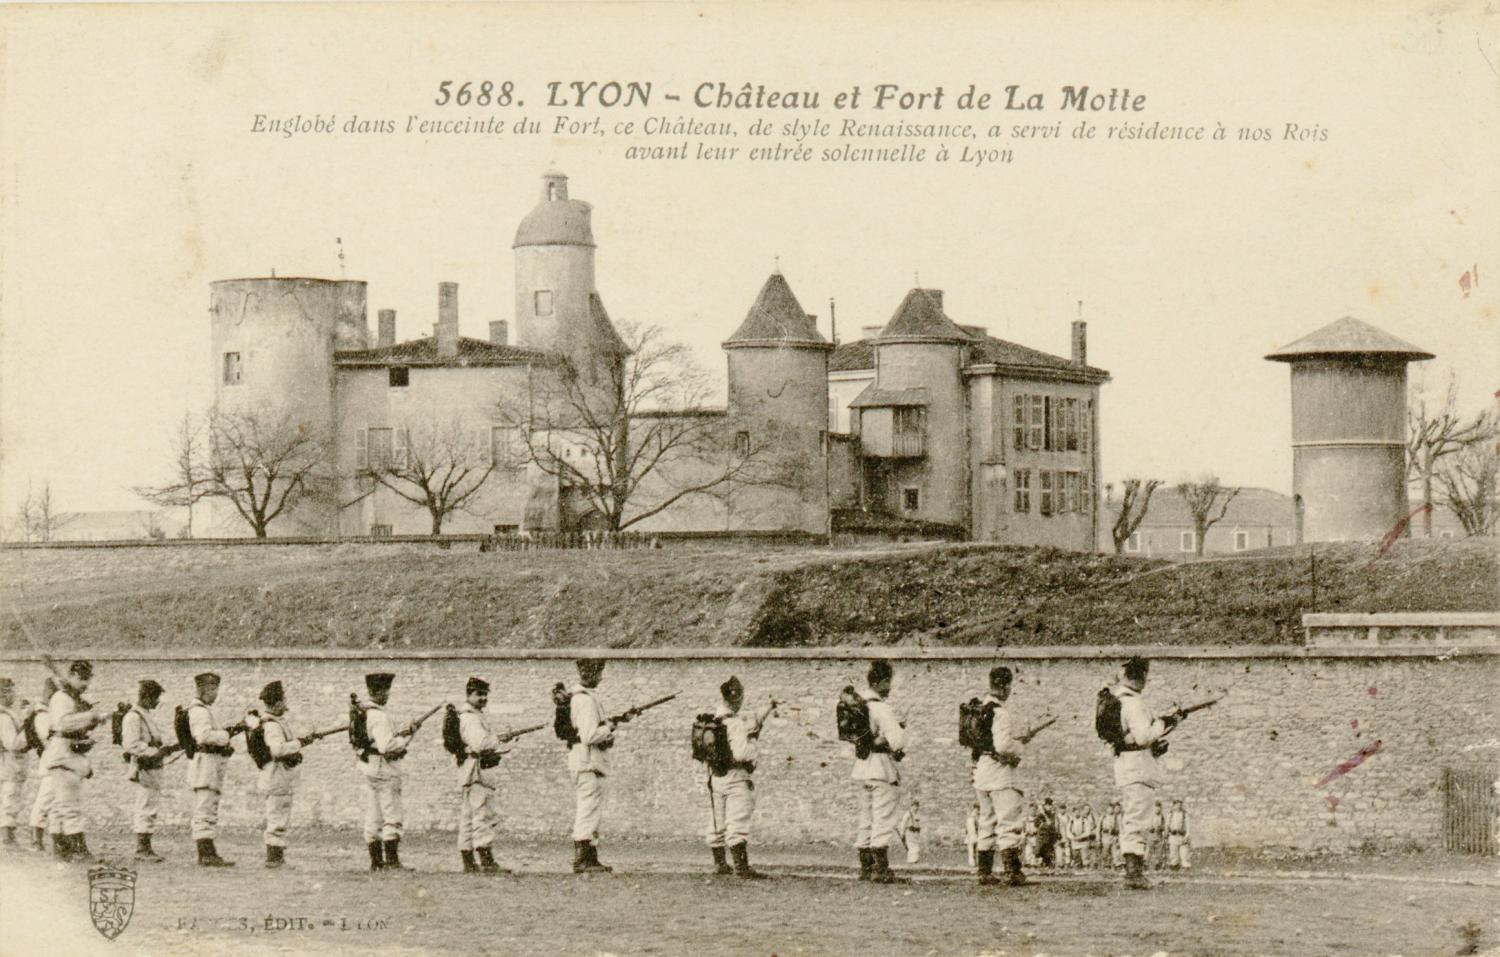 Lyon : Château et Fort de la Motte ; Englobé dans l'enceinte du Fort, ce Château de style Renaissance, a servi de résidence à nos Rois avant leur entrée solennelle à Lyon.